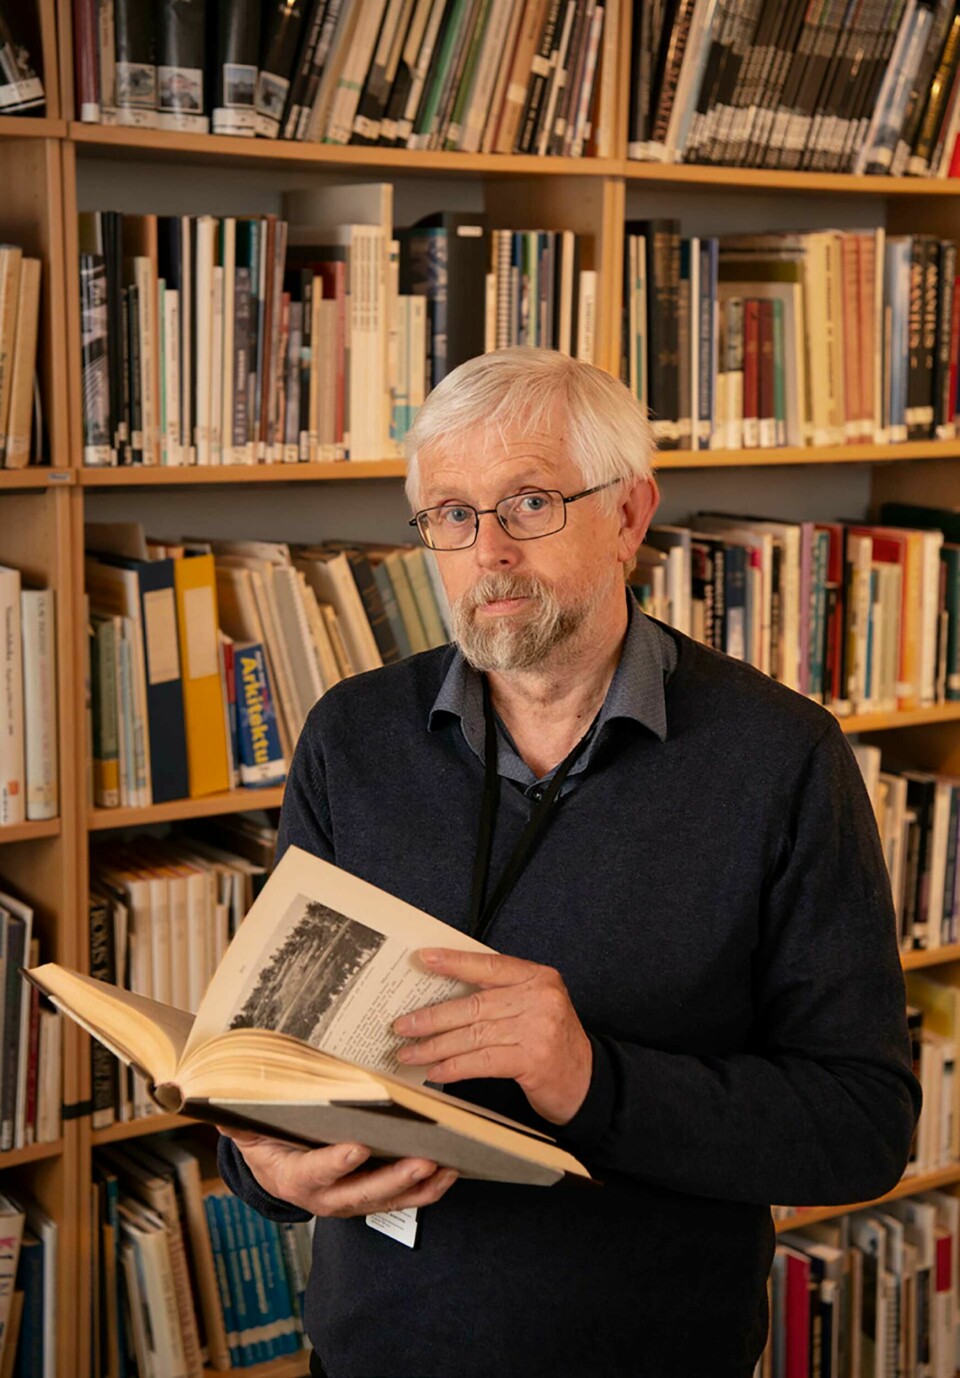 At filialen på Hægeland er analog er i seg selv ingen grunn til å legge den ned, sier rådgiver Torvald Hellum i Agder fylkesbibliotek.